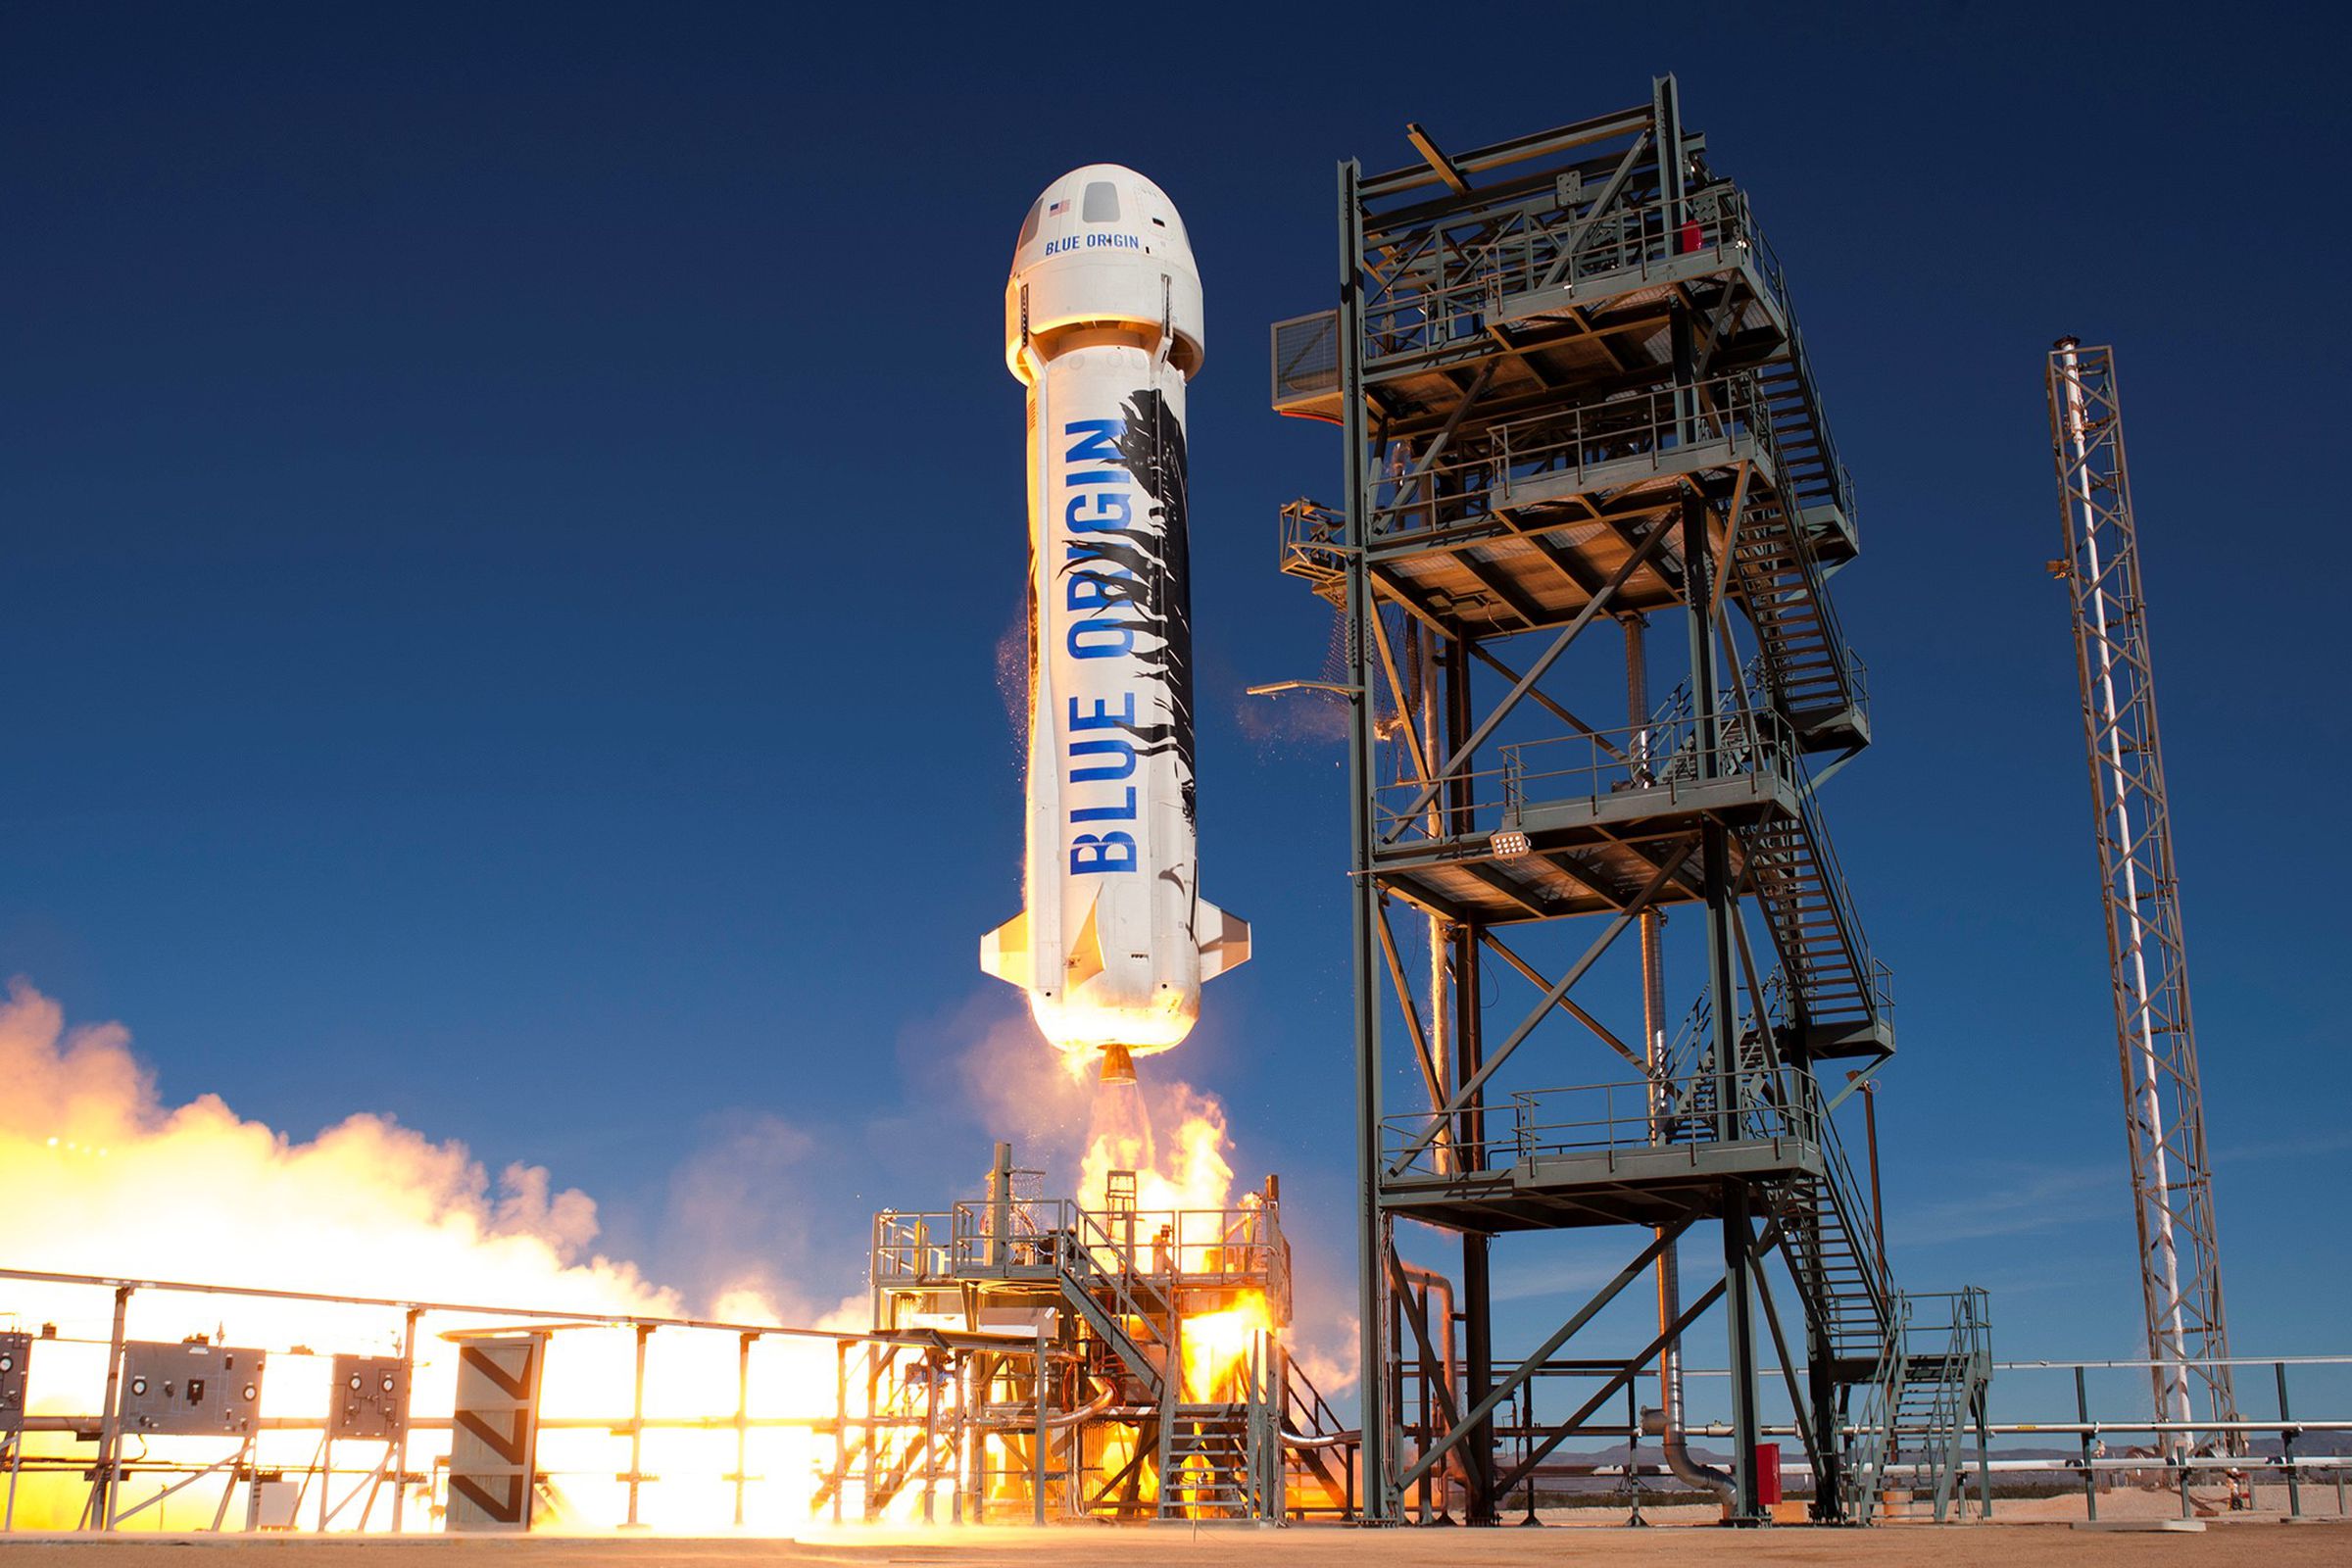 The New Shepard rocket.